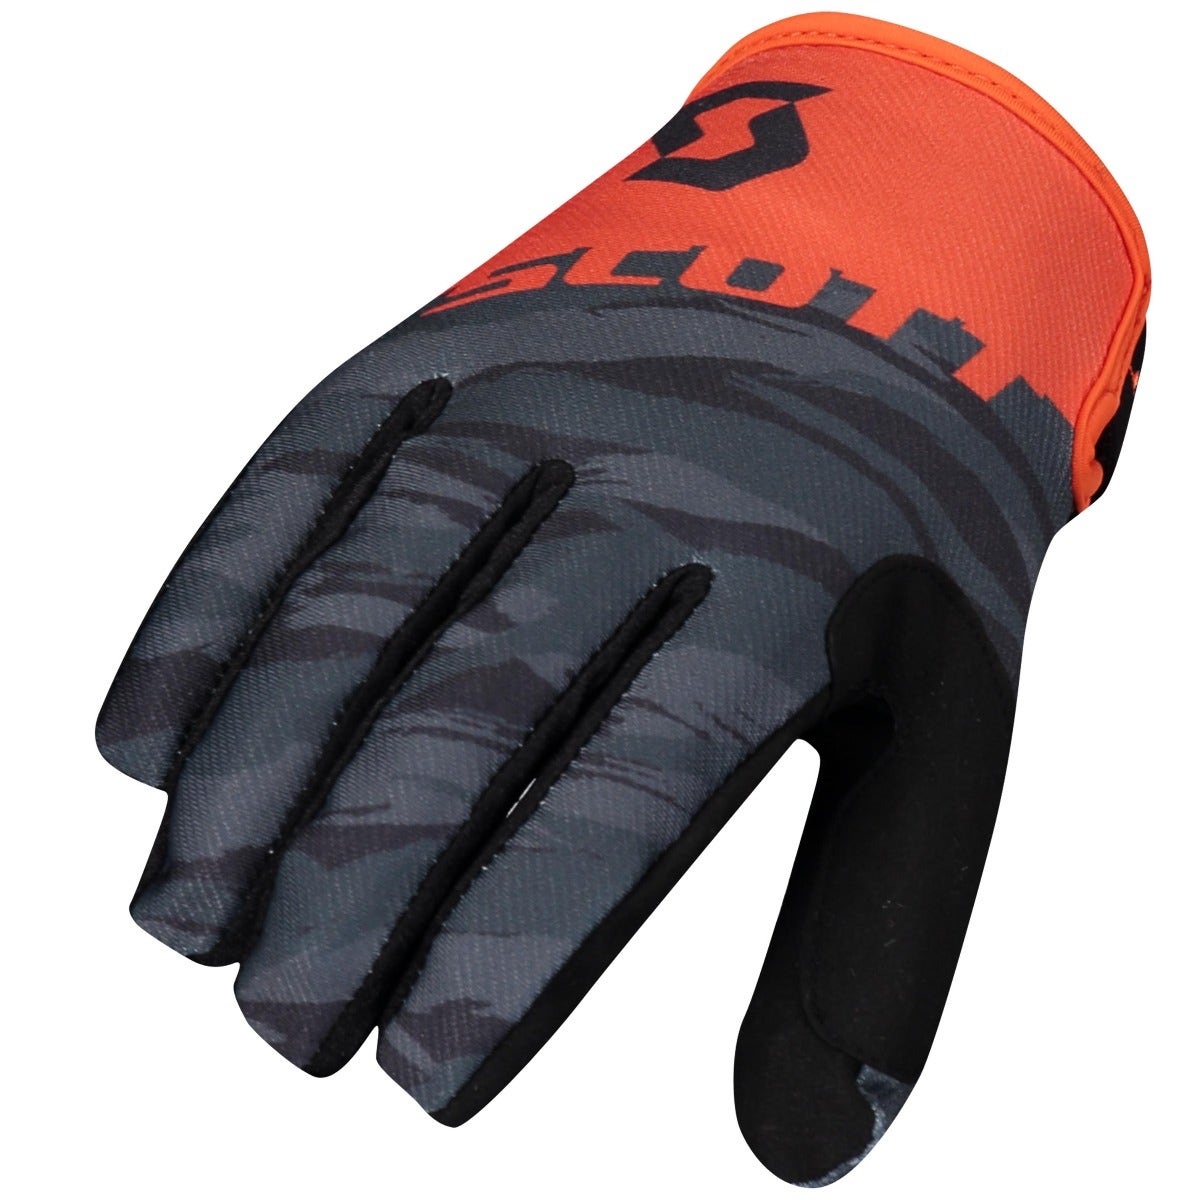 Scott 350 Dirt 2021 Glove Black/Orange